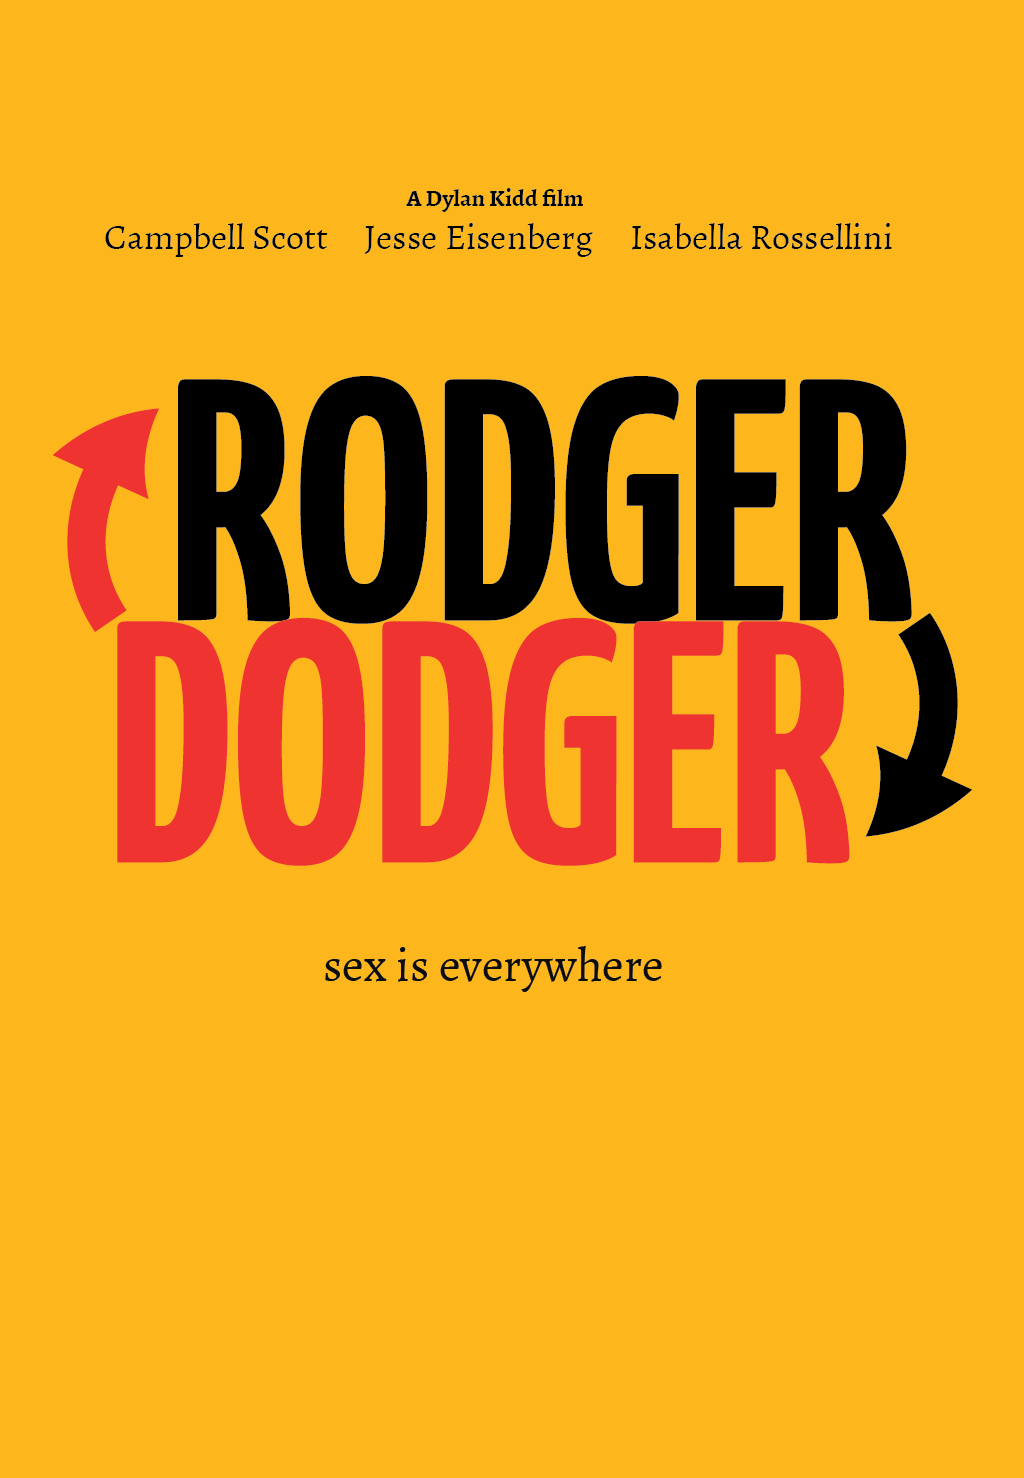 Roger Dodger Film Poster